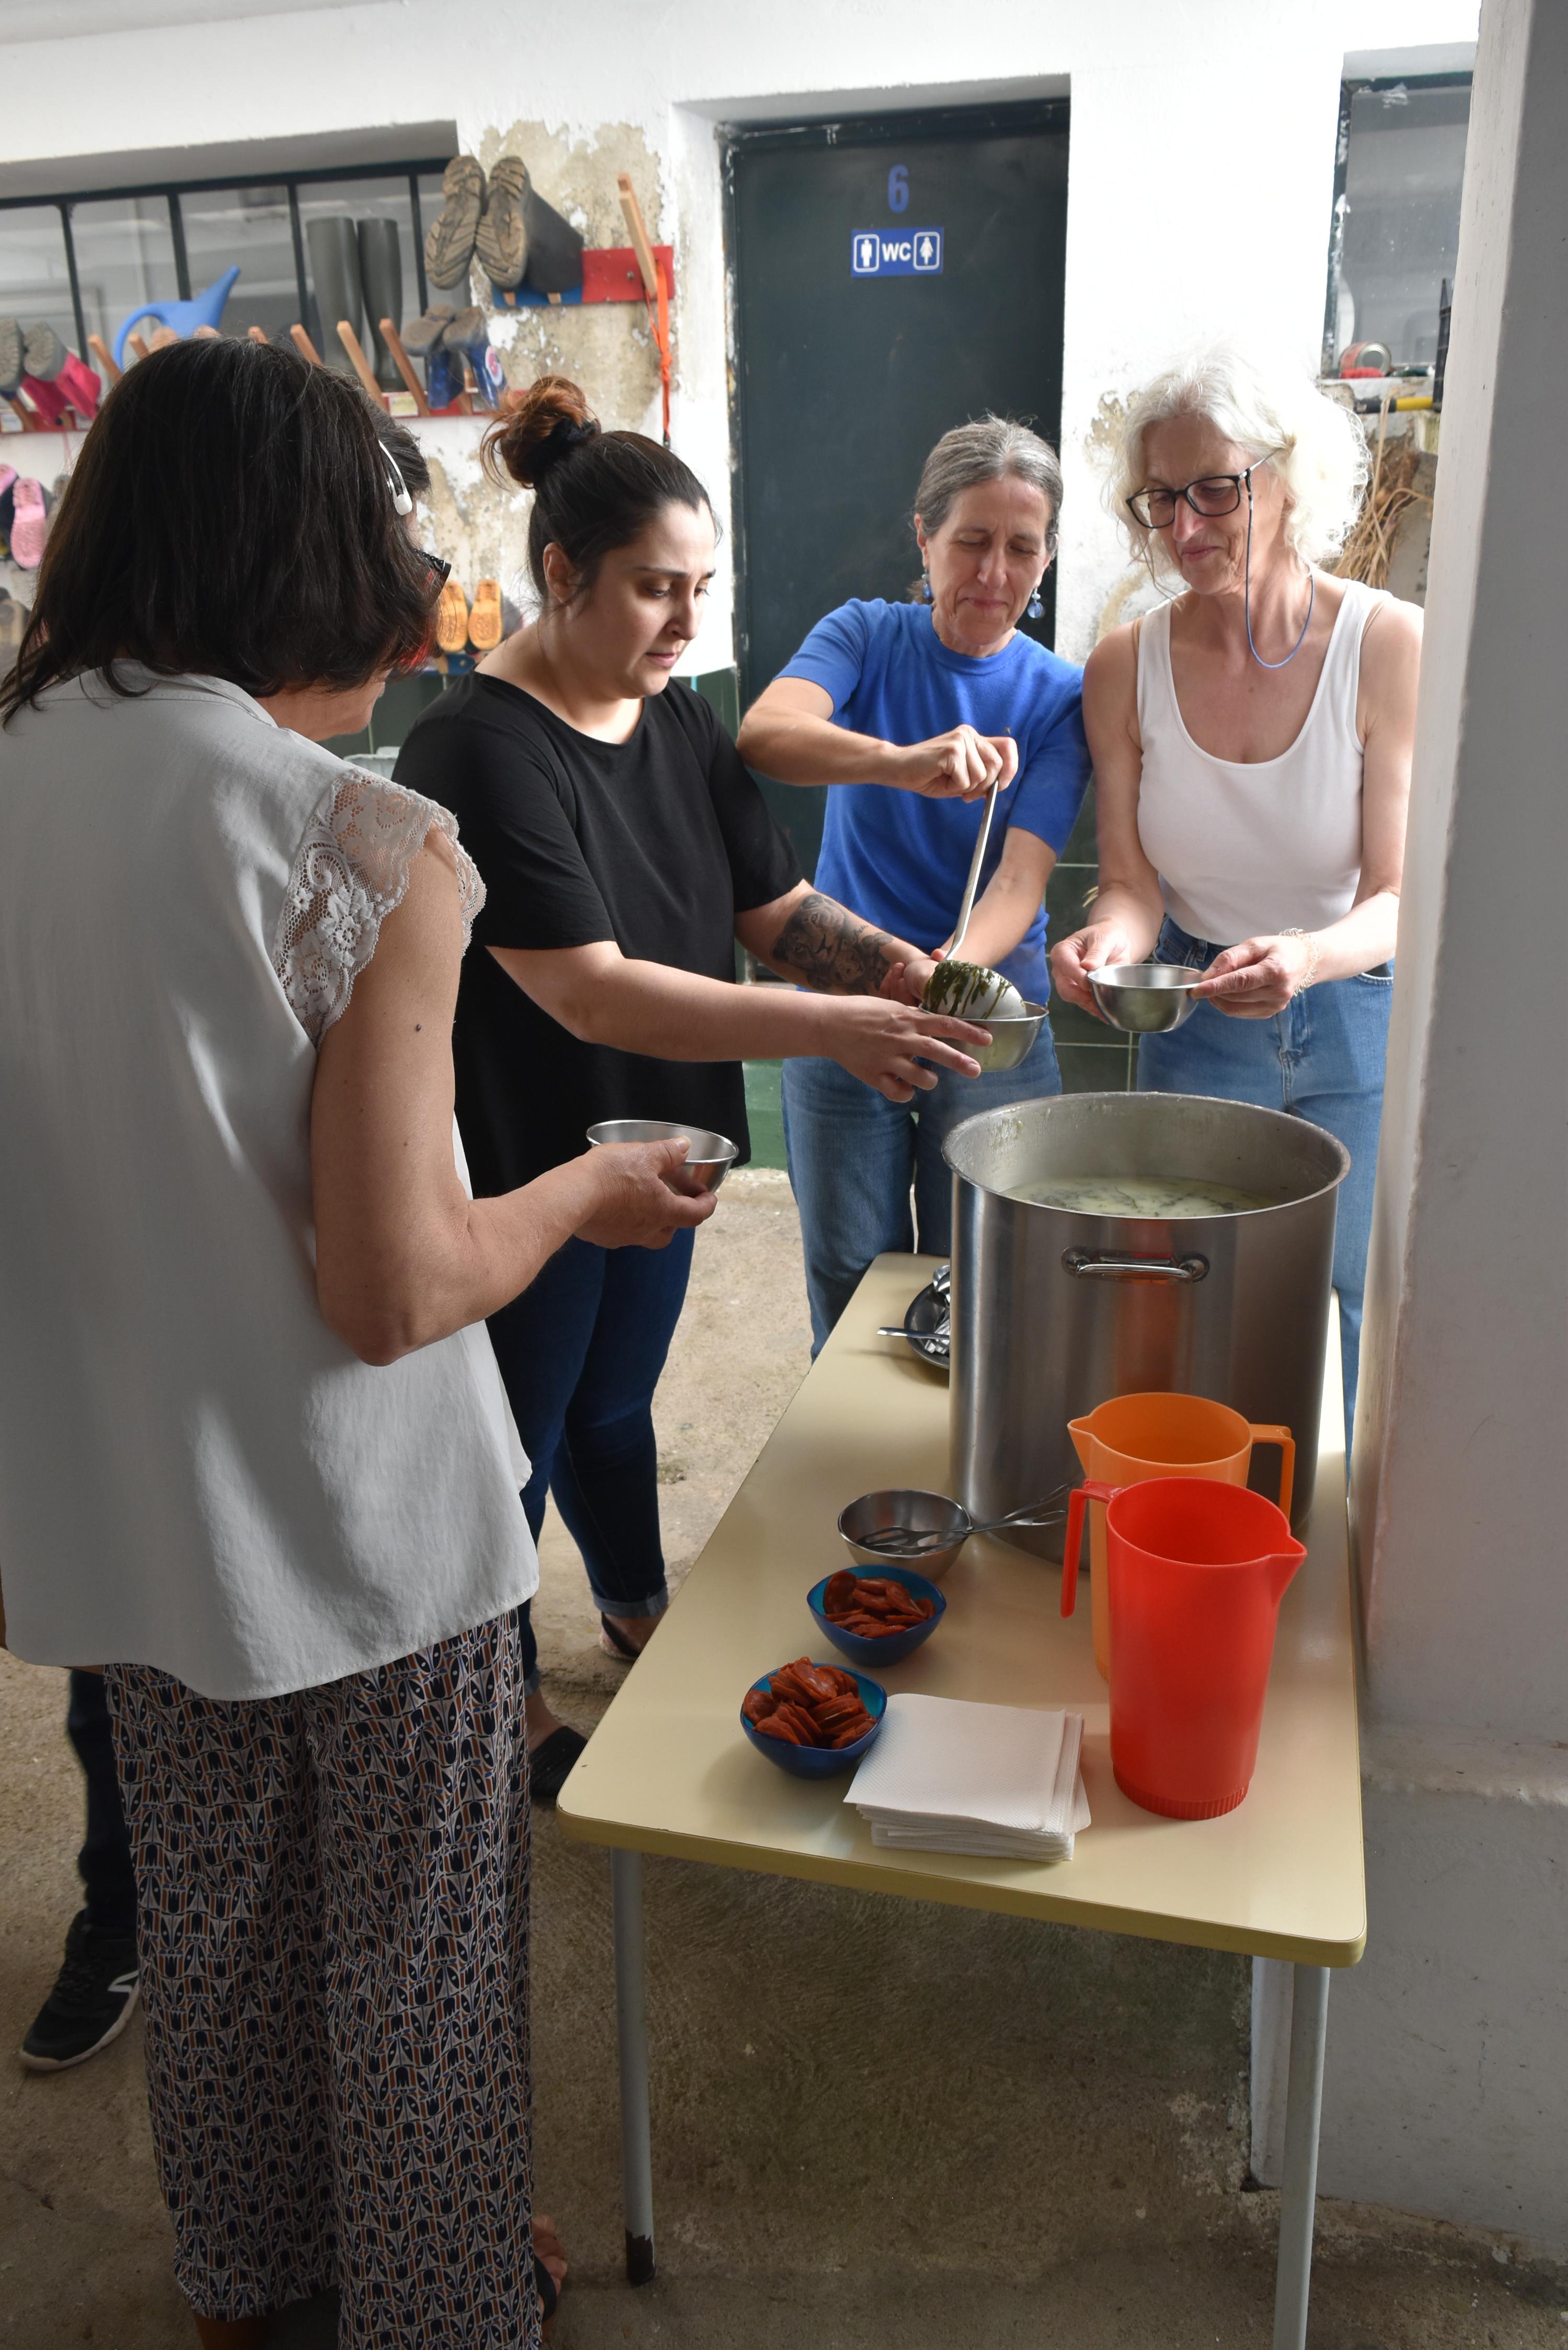 Sopa confecionada com produtos da Horta, servida às famílias no Dia da Família/Dia Eco Escolas, evento realizado no Jardim com a participação das famílias das crianças